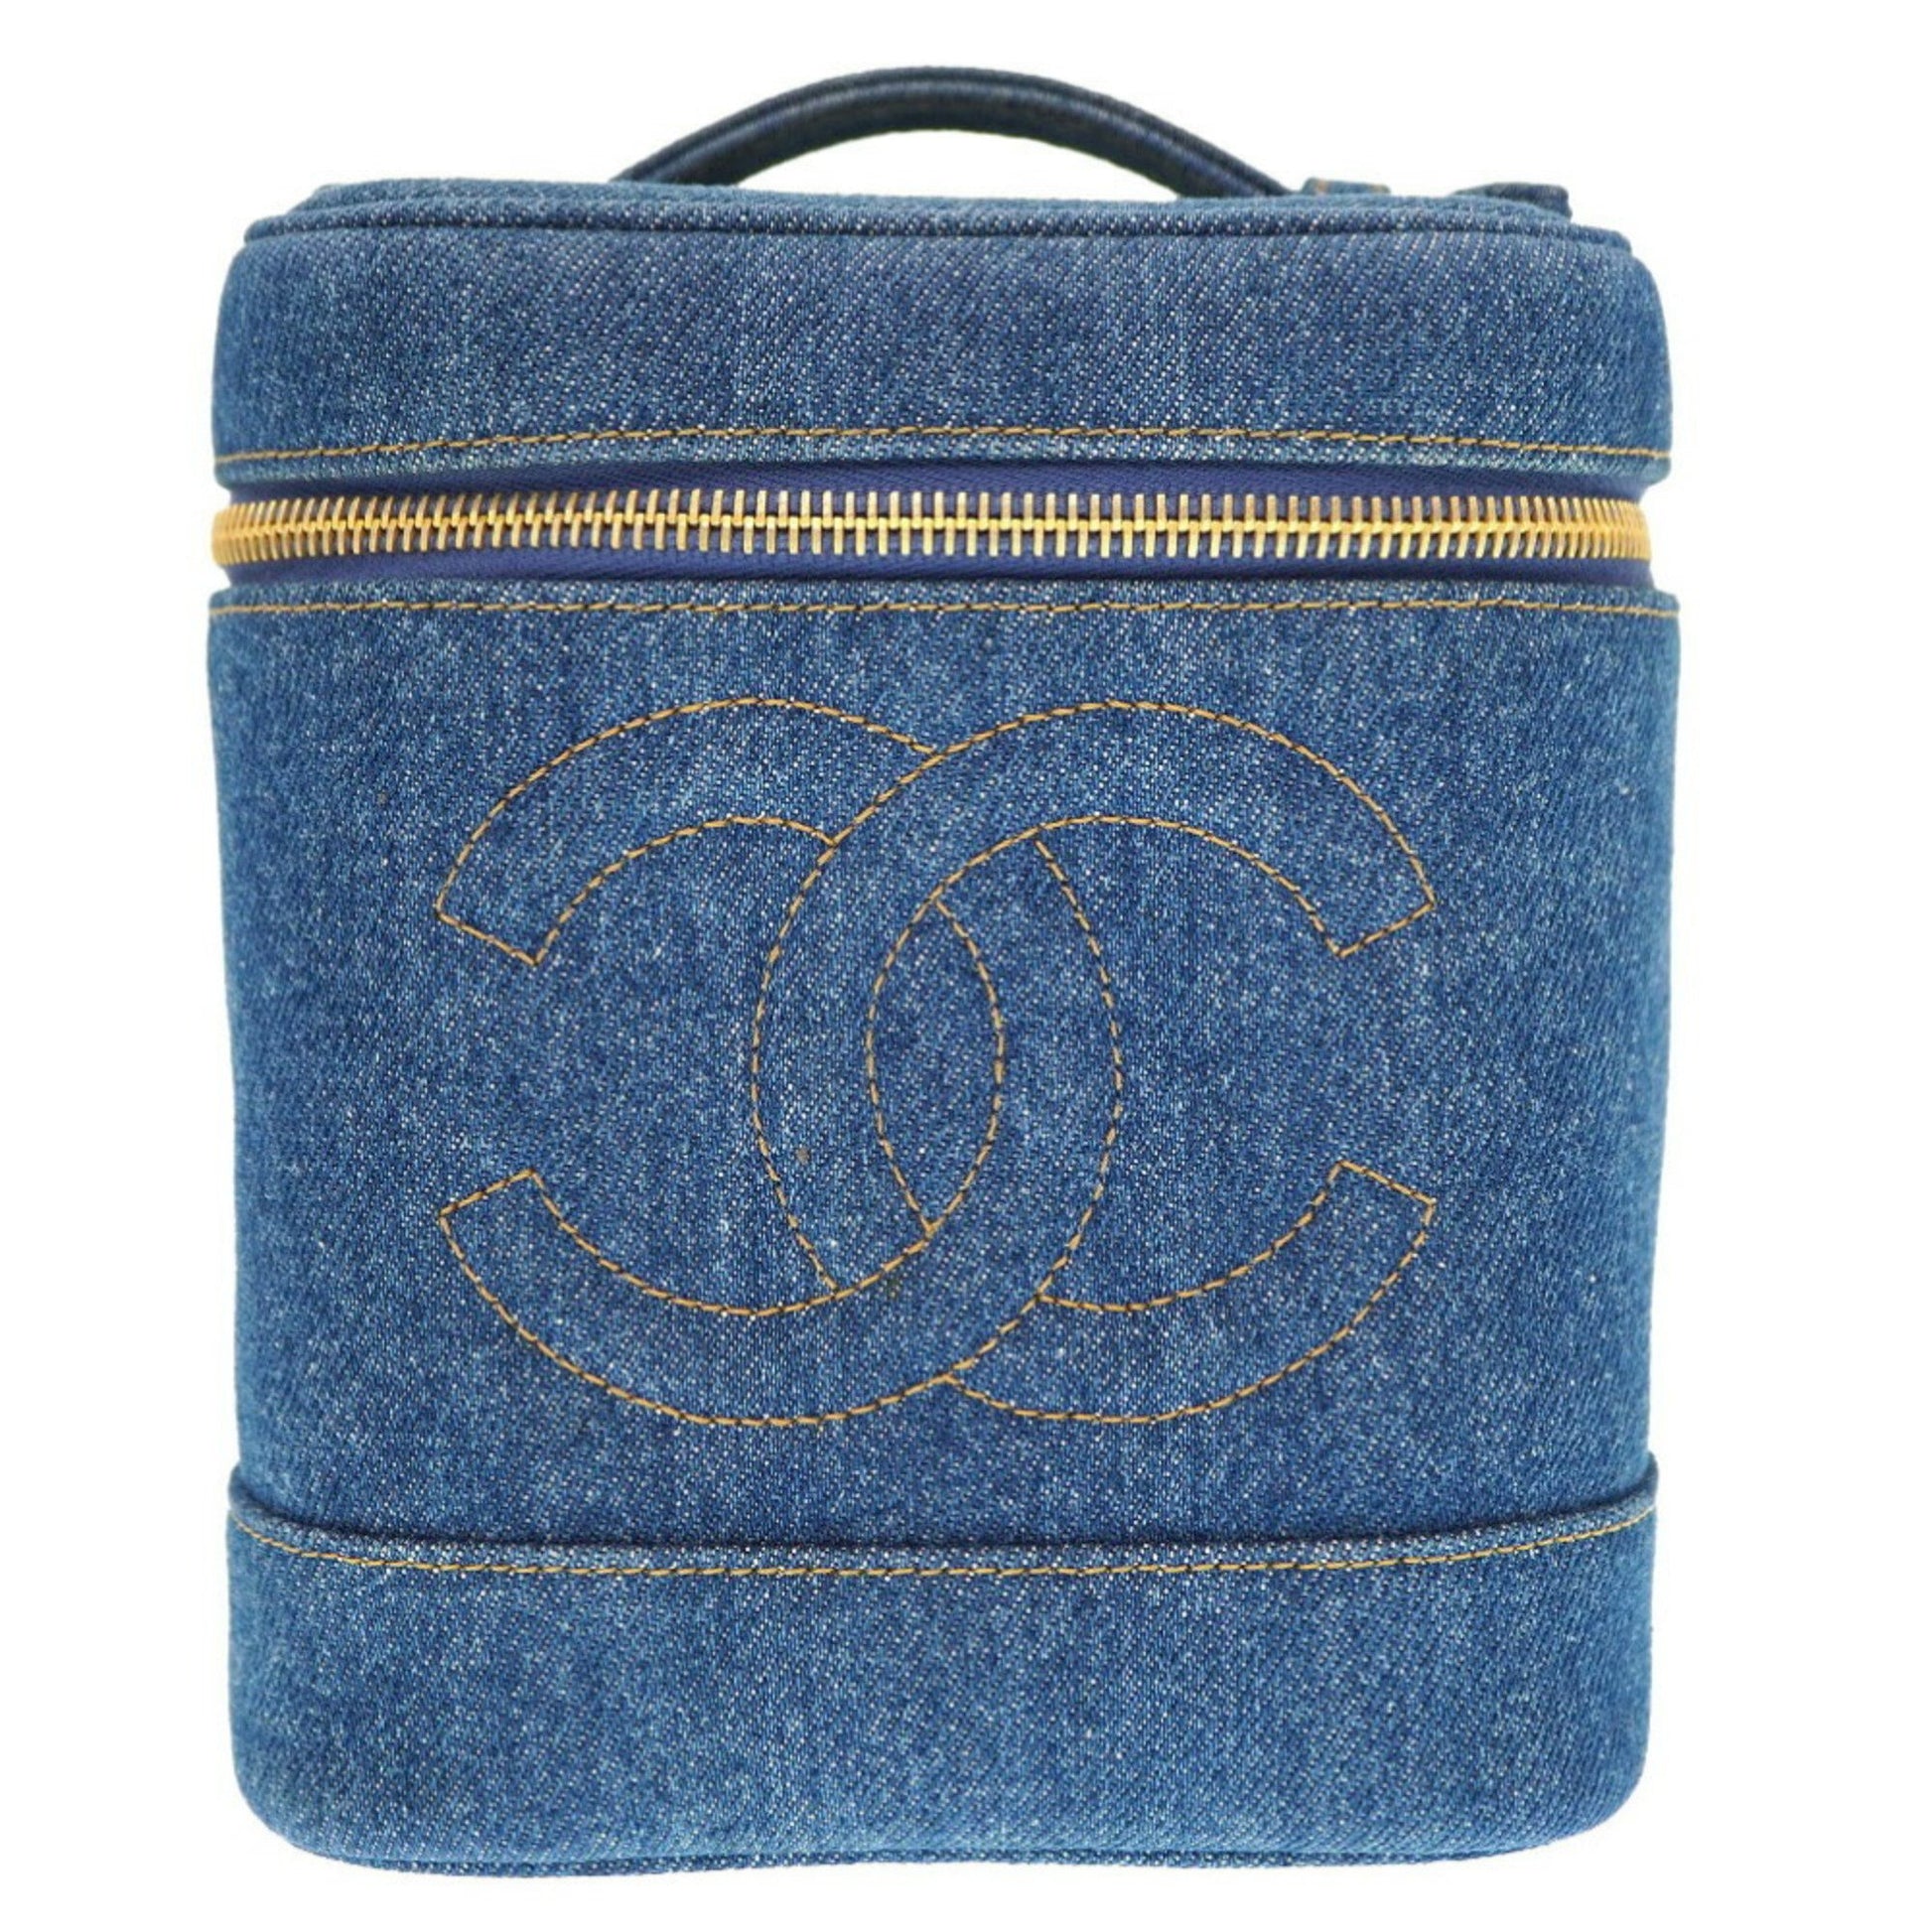 Chanel Blue No. 4 Coco Mark Vanity Bag Handbag